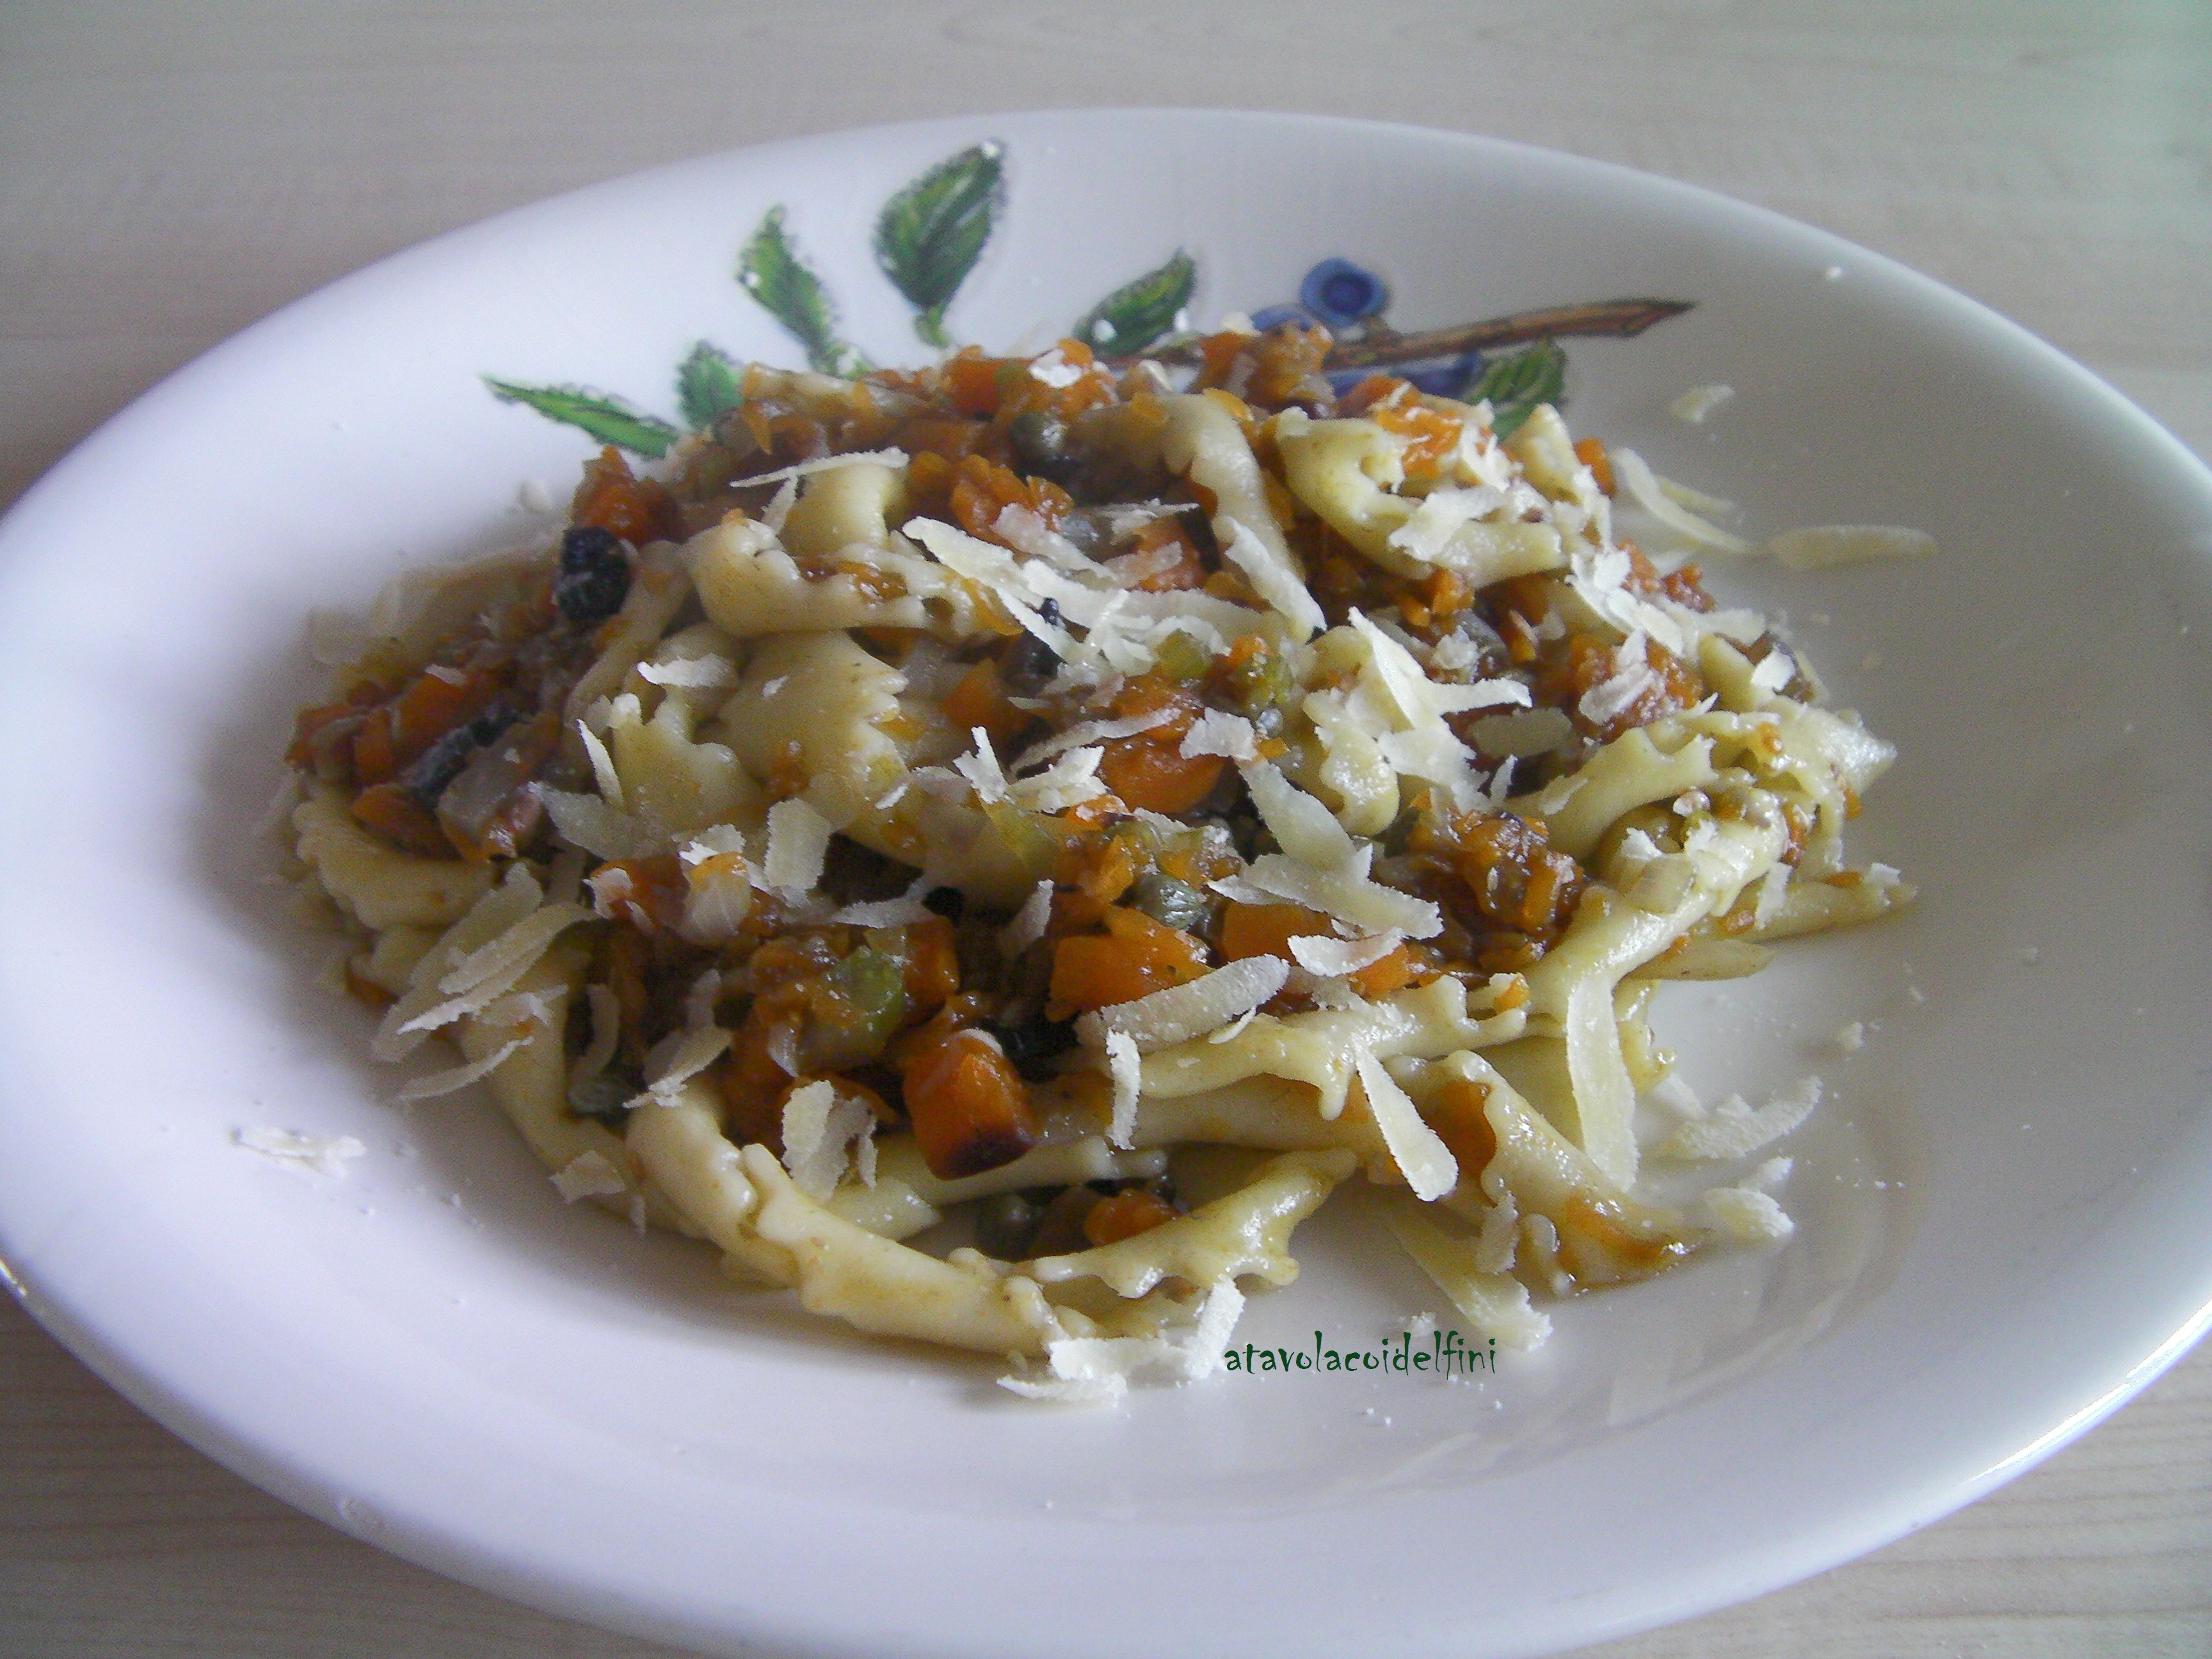 Sagne ‘ncannulate di semola rimacinata di grano duro con zucca, verdure croccanti e caciocavallo podolico